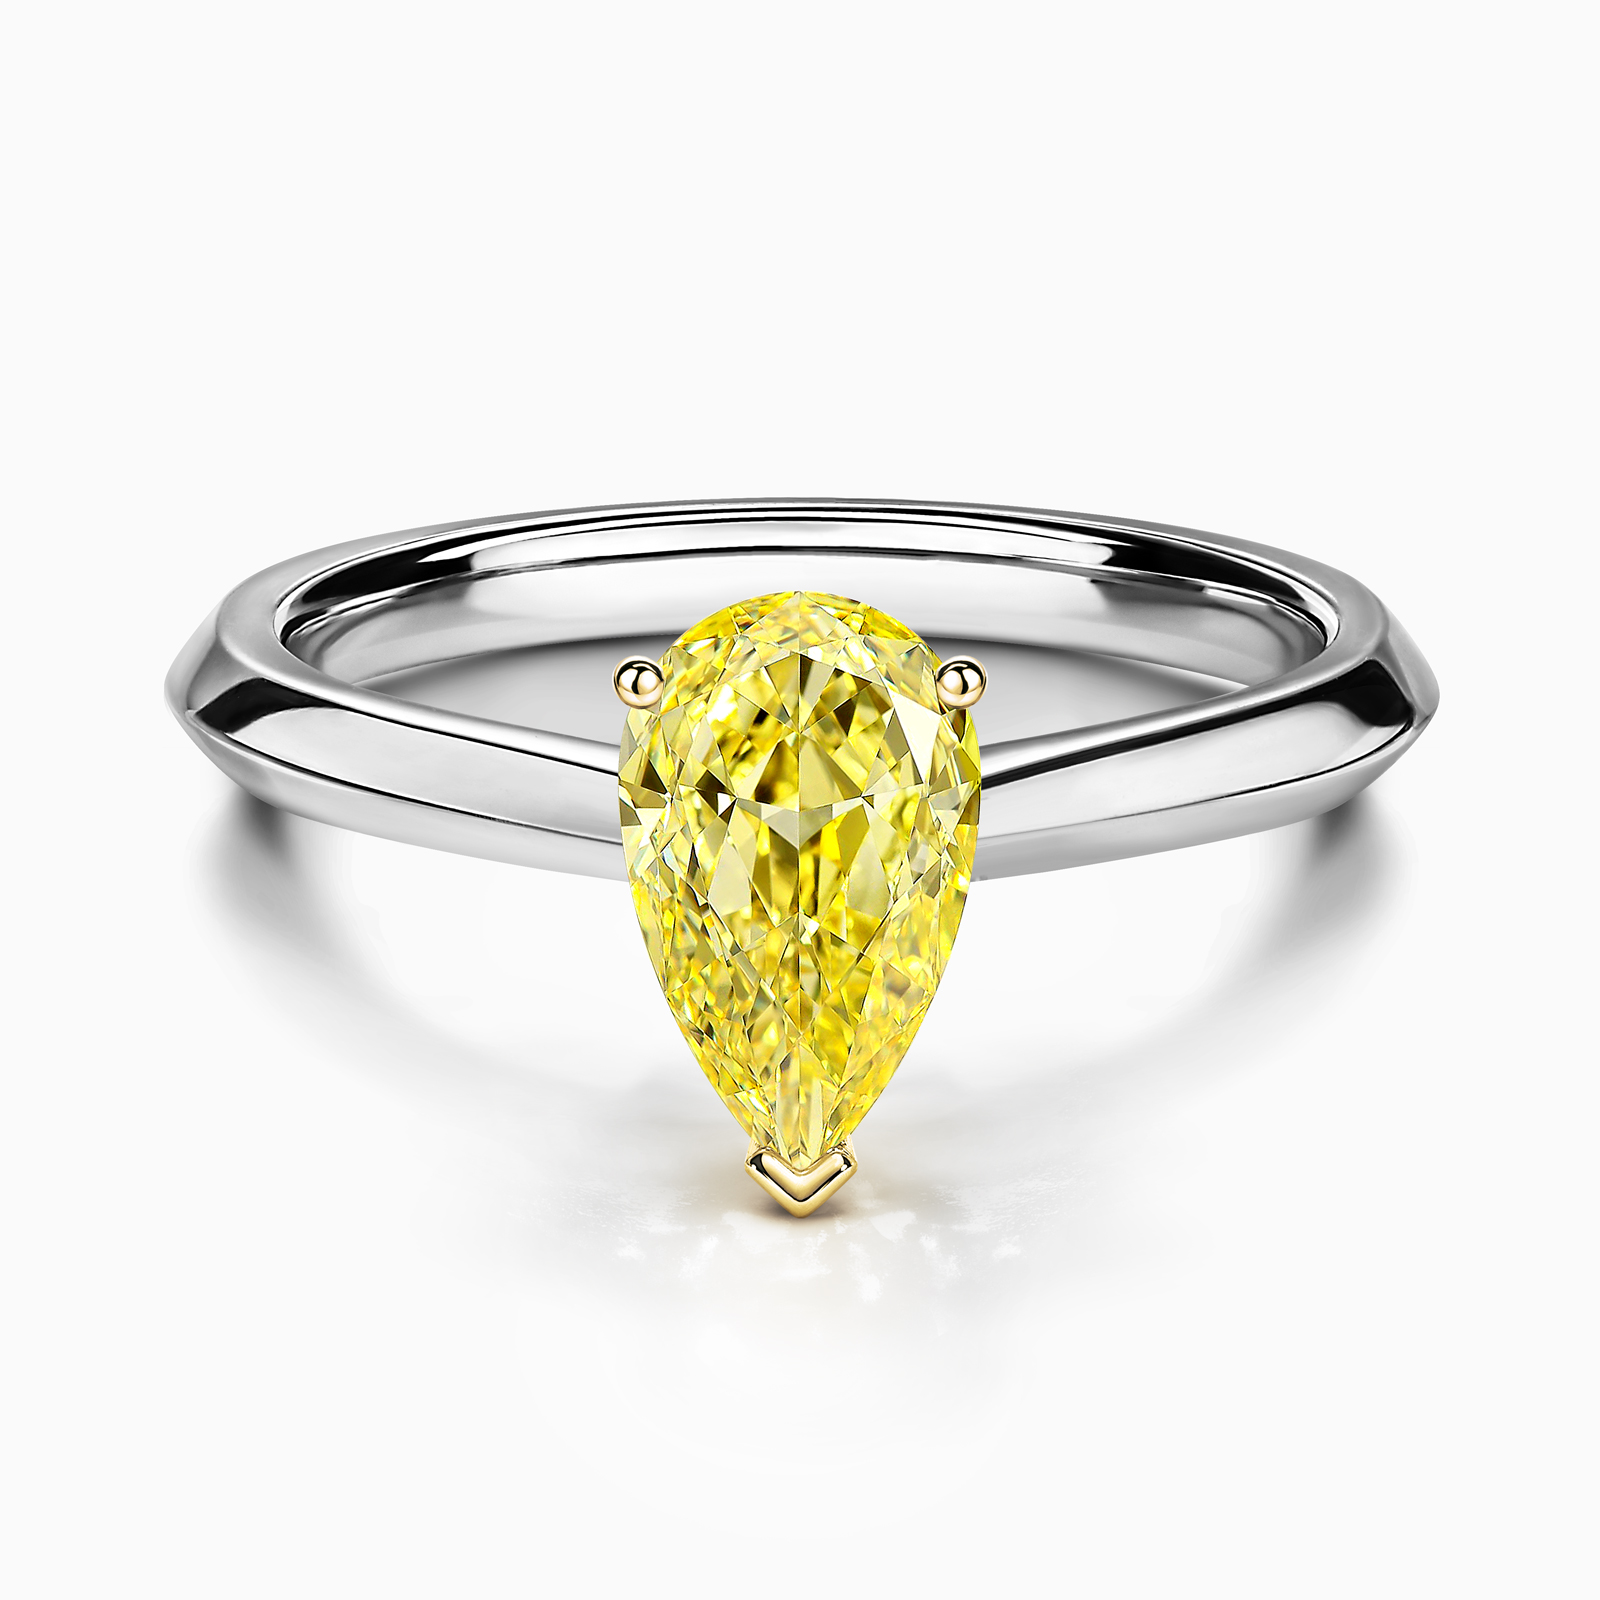 Кольцо с жёлтым бриллиантом огранки груша.